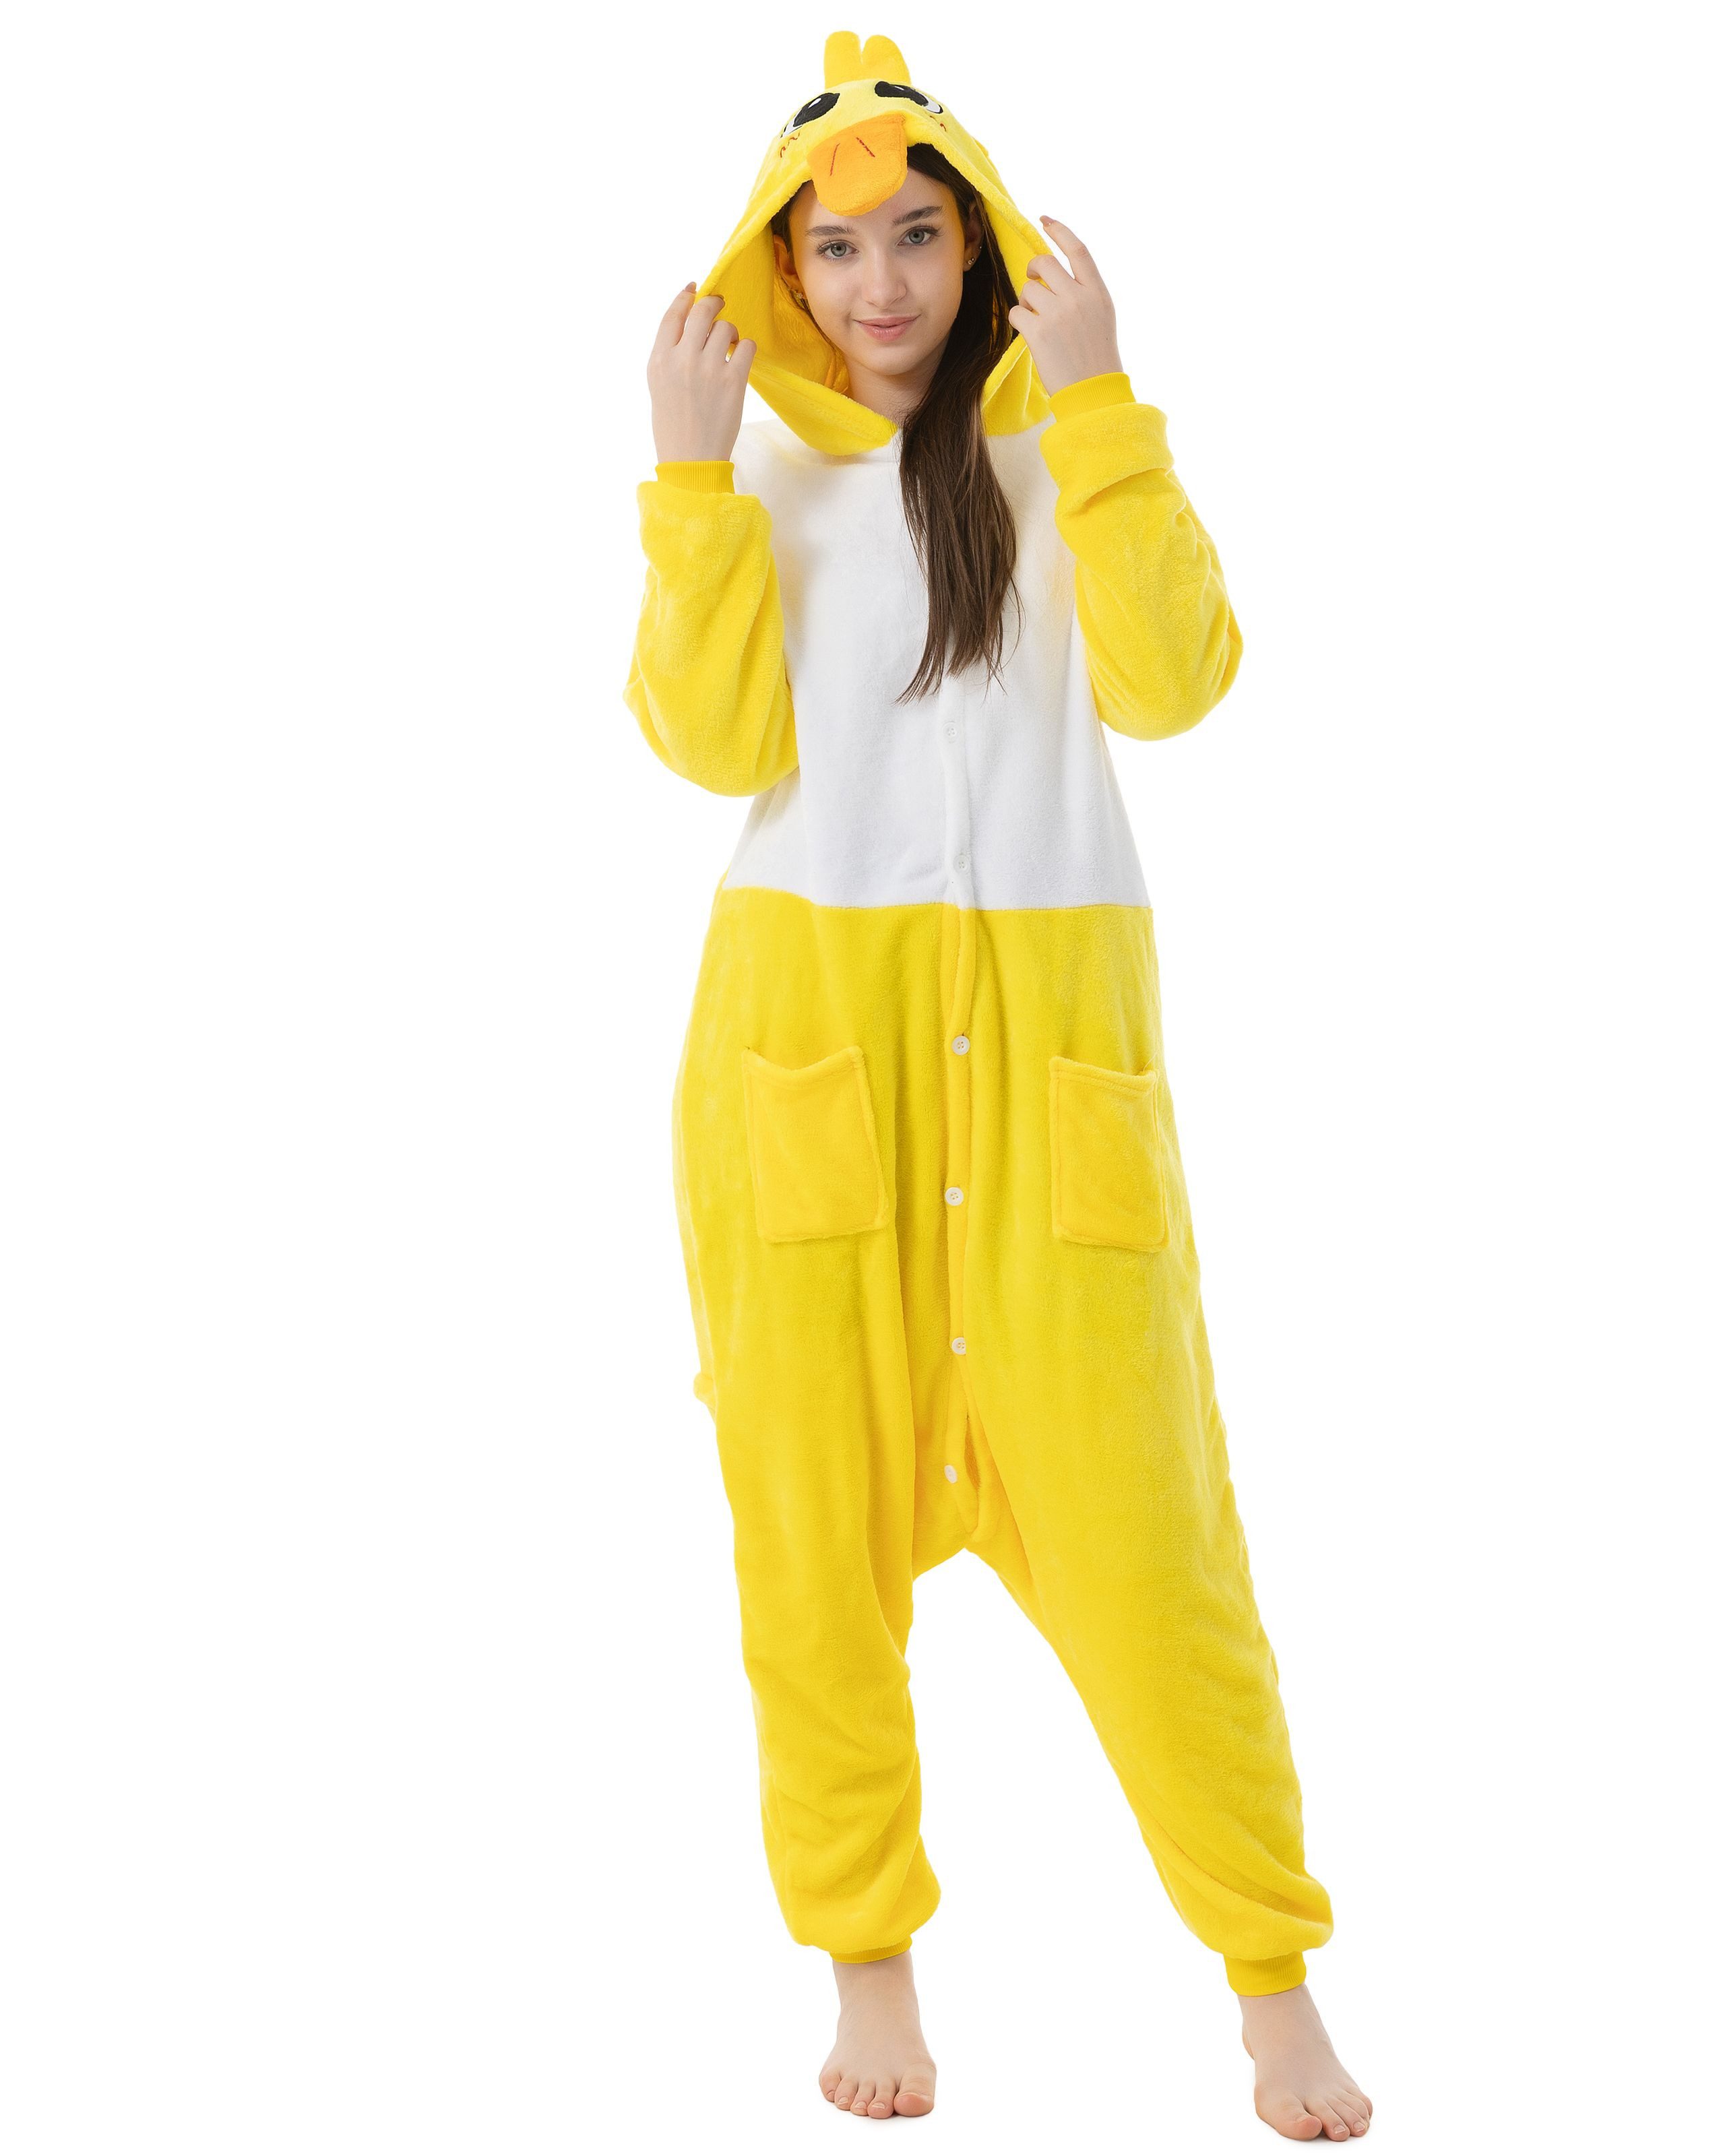 Katara Partyanzug Meerestiere Jumpsuit Kostüm für Erwachsene S-XL, Karneval - Kostüm, Kigurumi- Ente Gelb S (145-155cm)